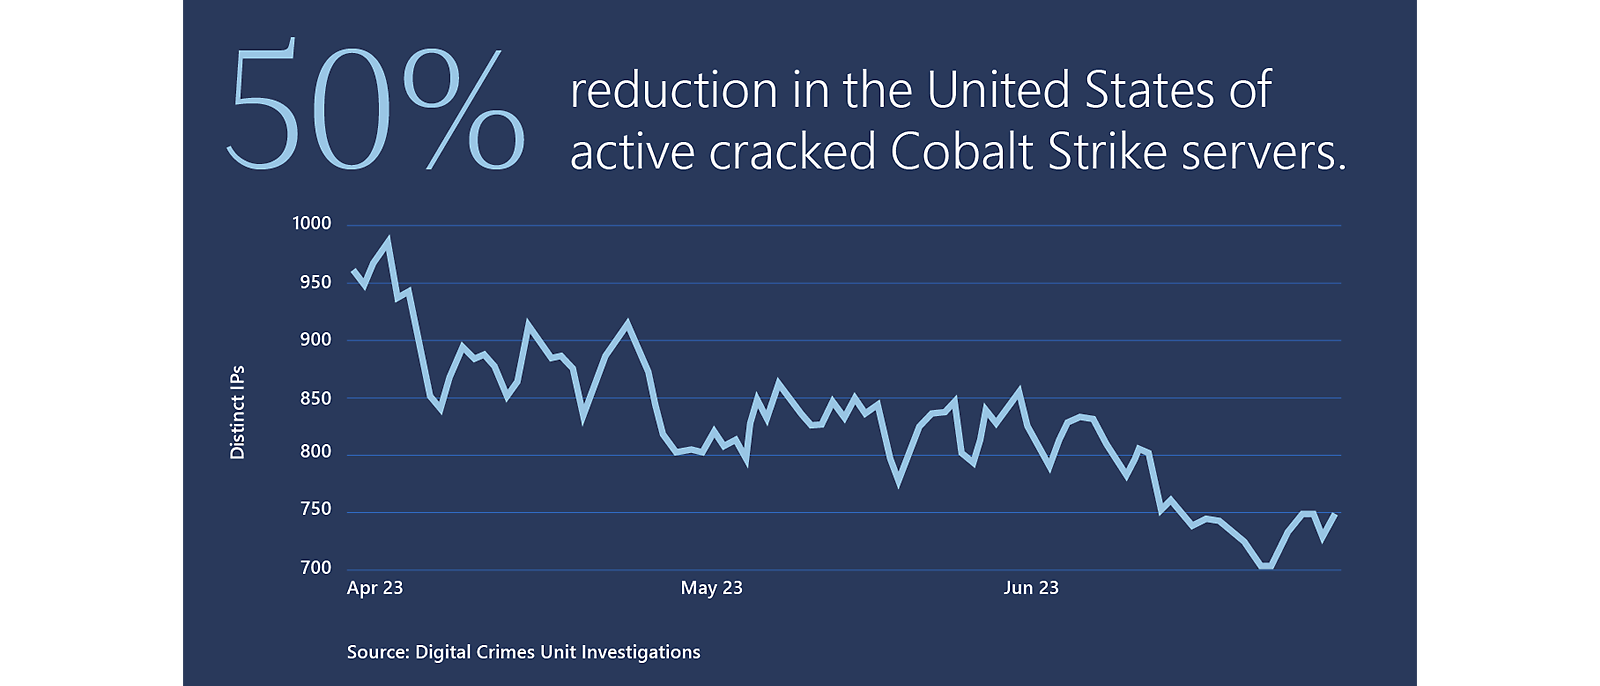 Diagramă care indică o reducere de 50% a serverelor sparte active Cobalt Strike în Statele Unite ale Americii.